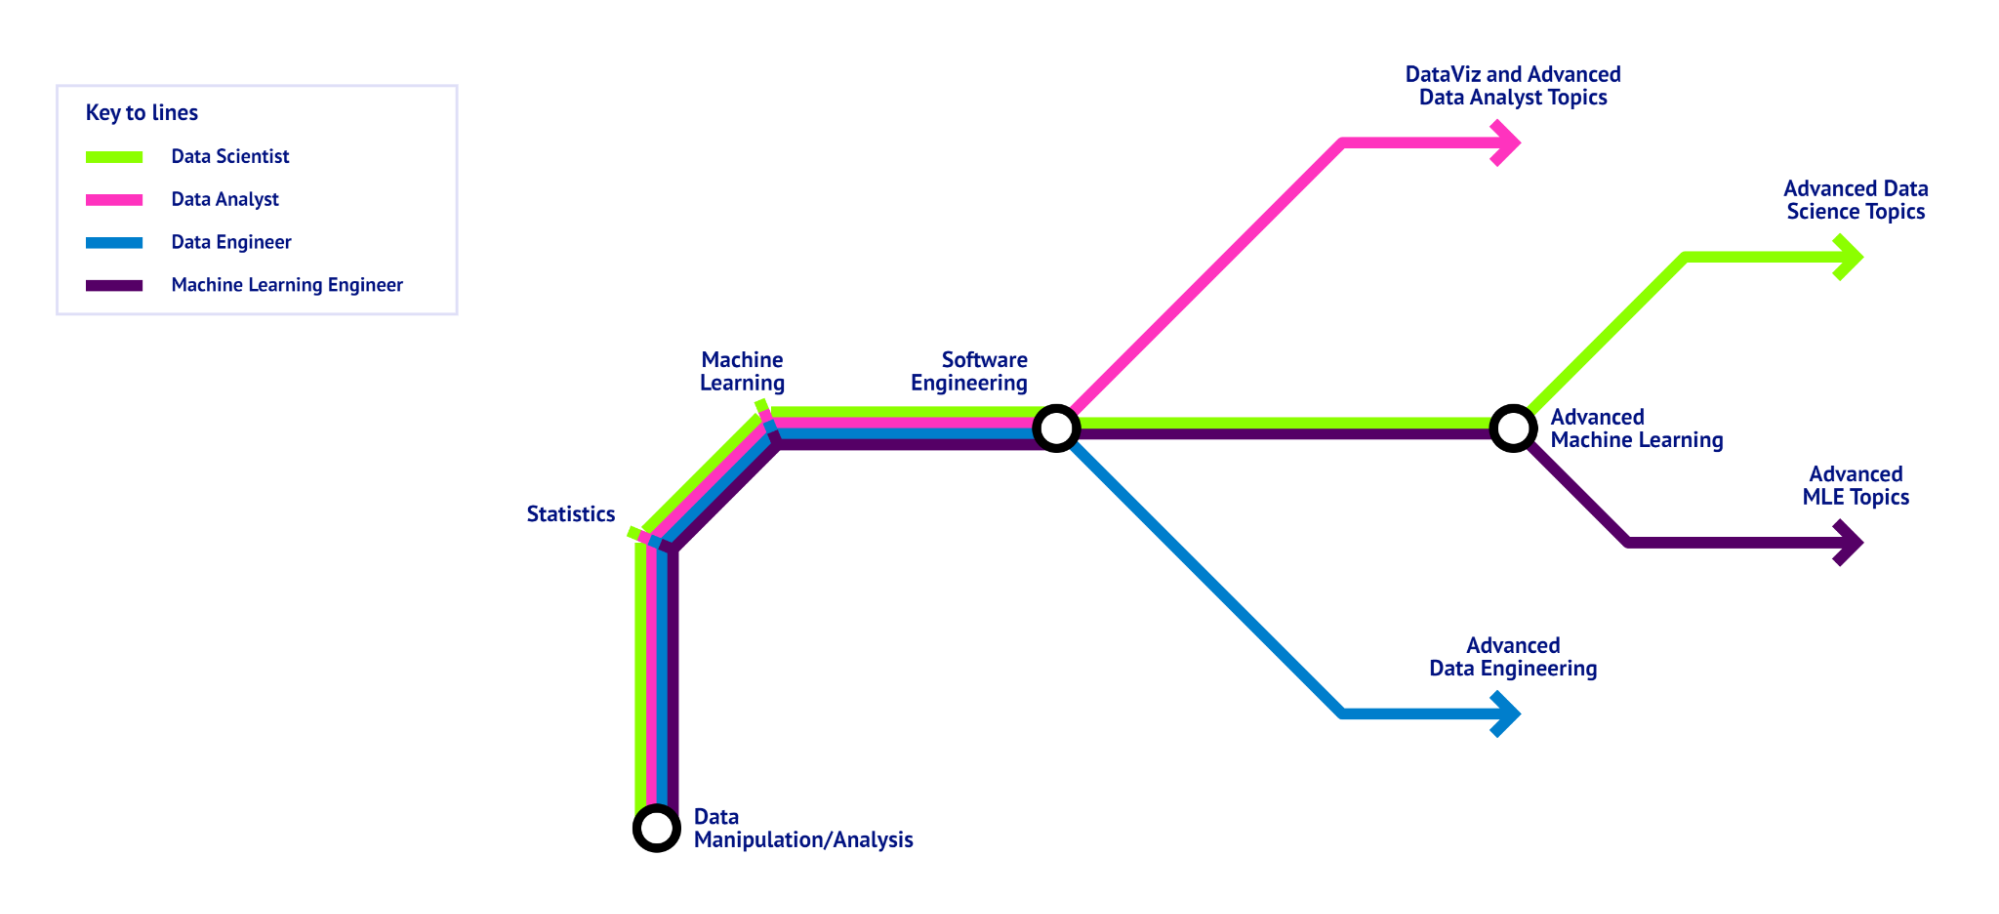 Um roteiro de ciência de dados visualizado como mapa de metrô, mostrando a base que todas as funções de ciência de dados têm em comum e as habilidades específicas para as diferentes funções. - Imagem do autor